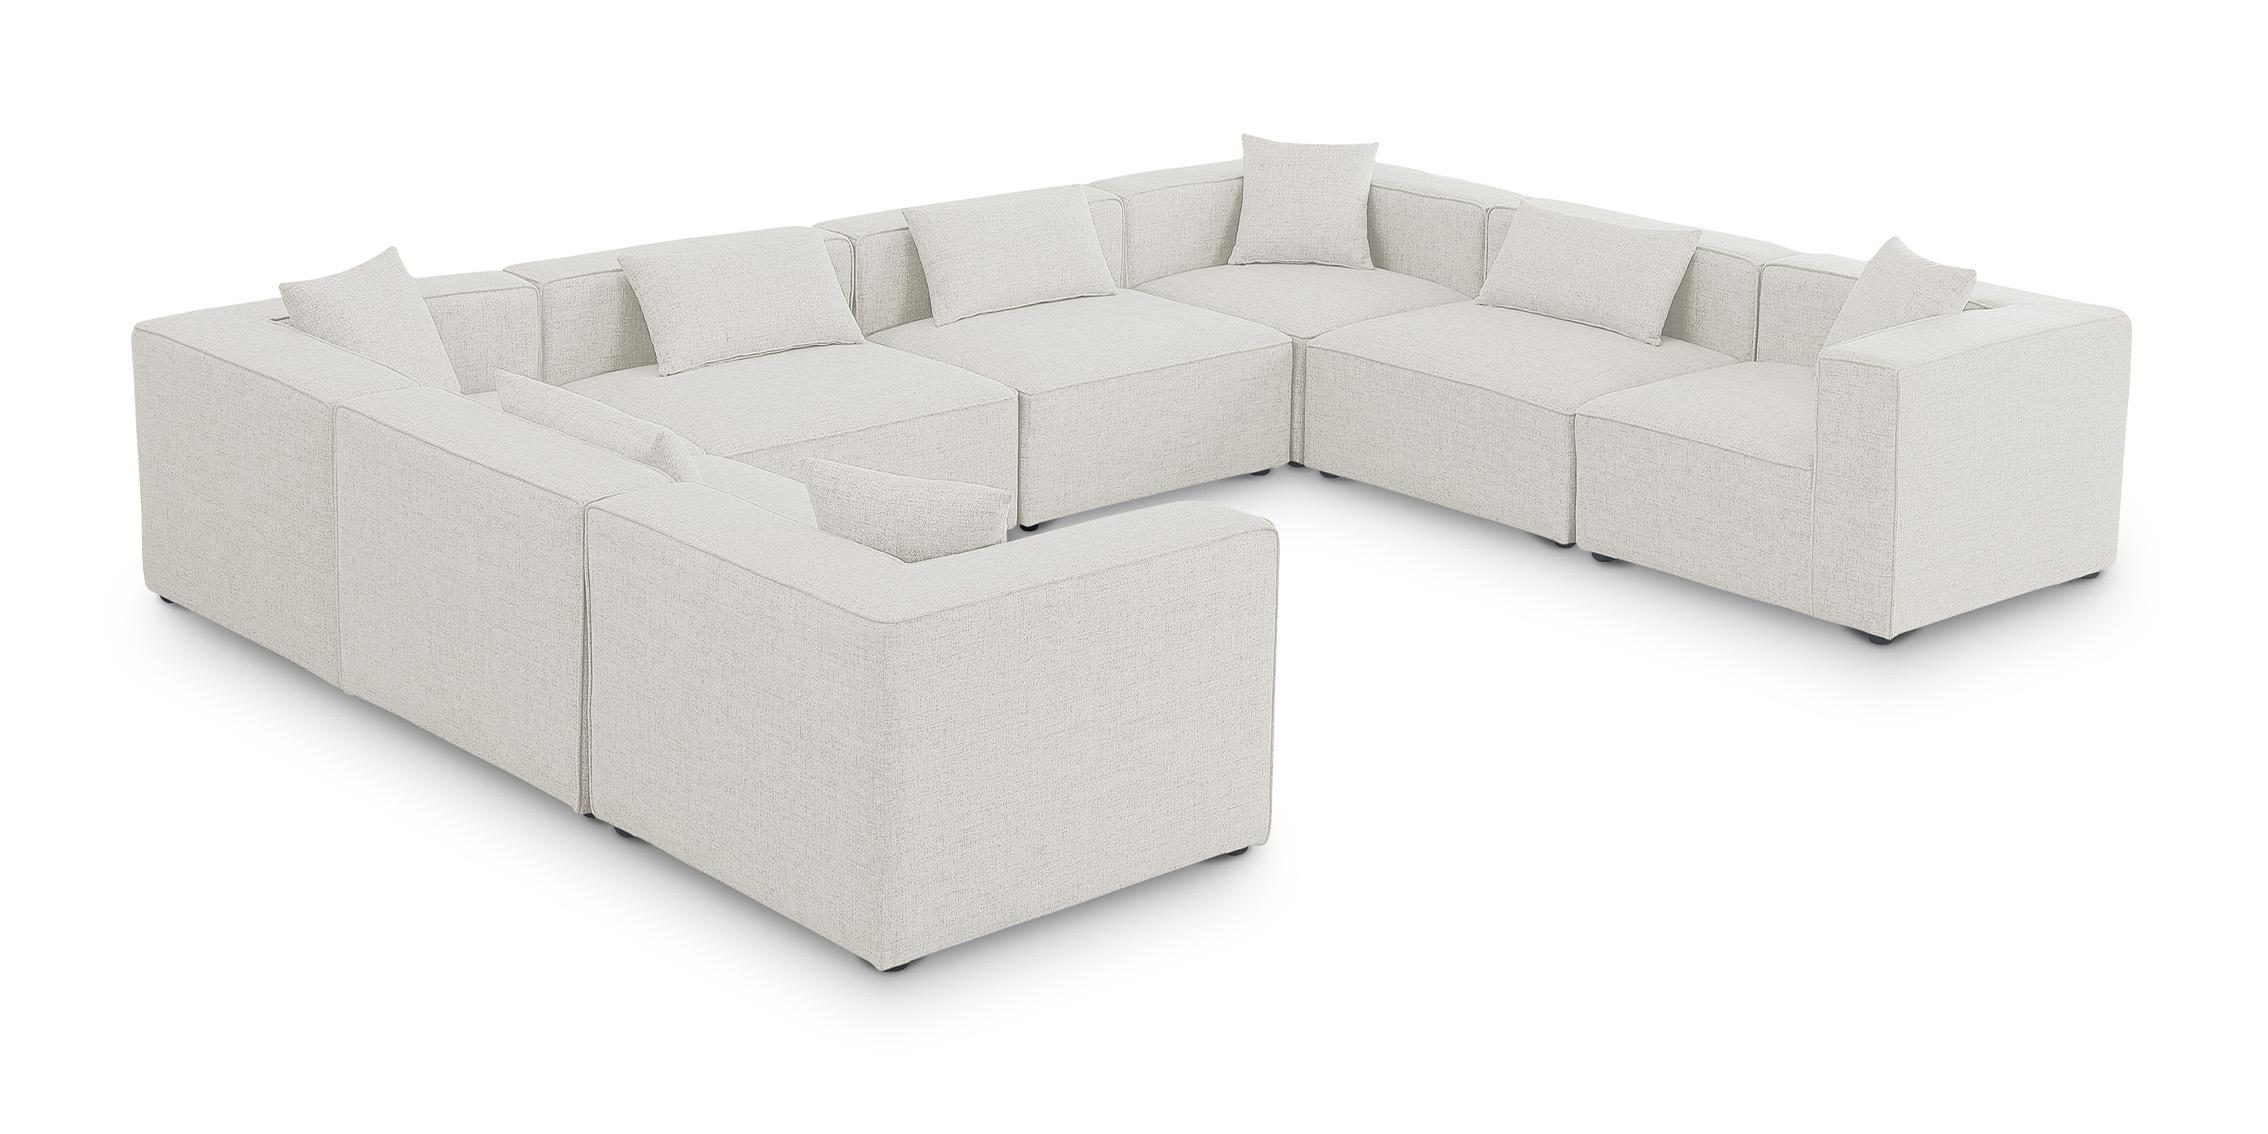 Contemporary, Modern Modular Sectional Sofa CUBE 630Cream-Sec8A 630Cream-Sec8A in Cream Linen